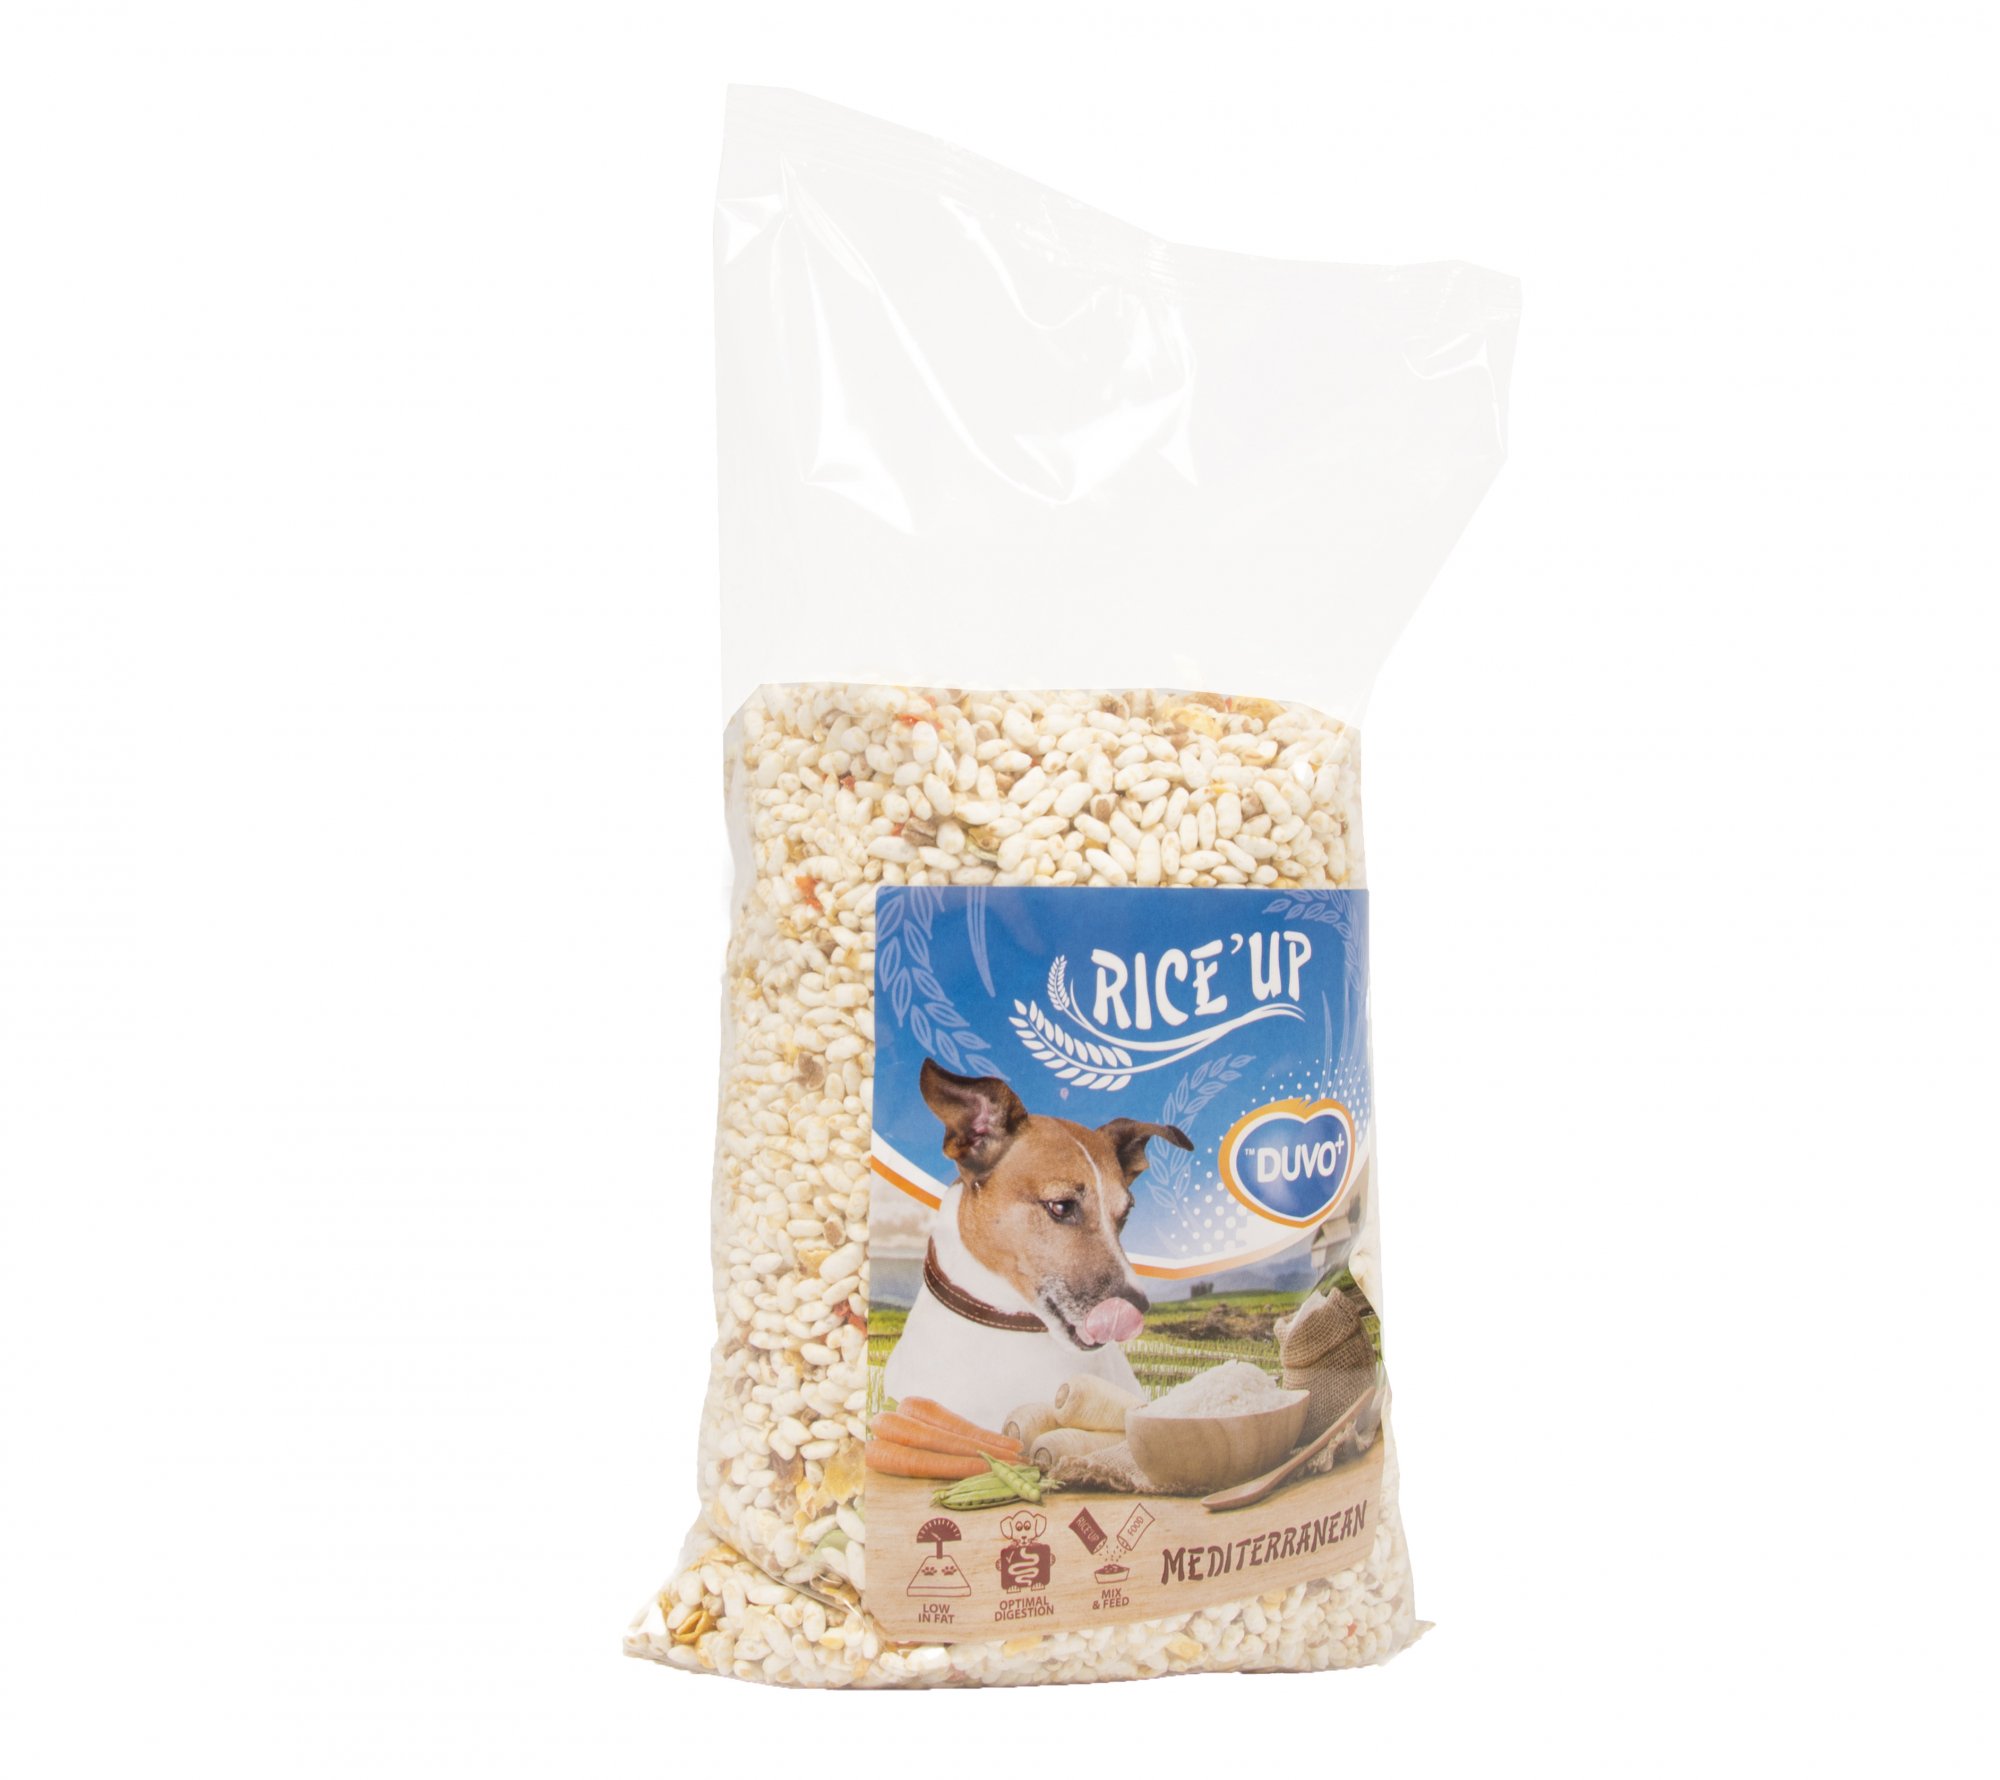 Rice'Up Mediterranean 1kg